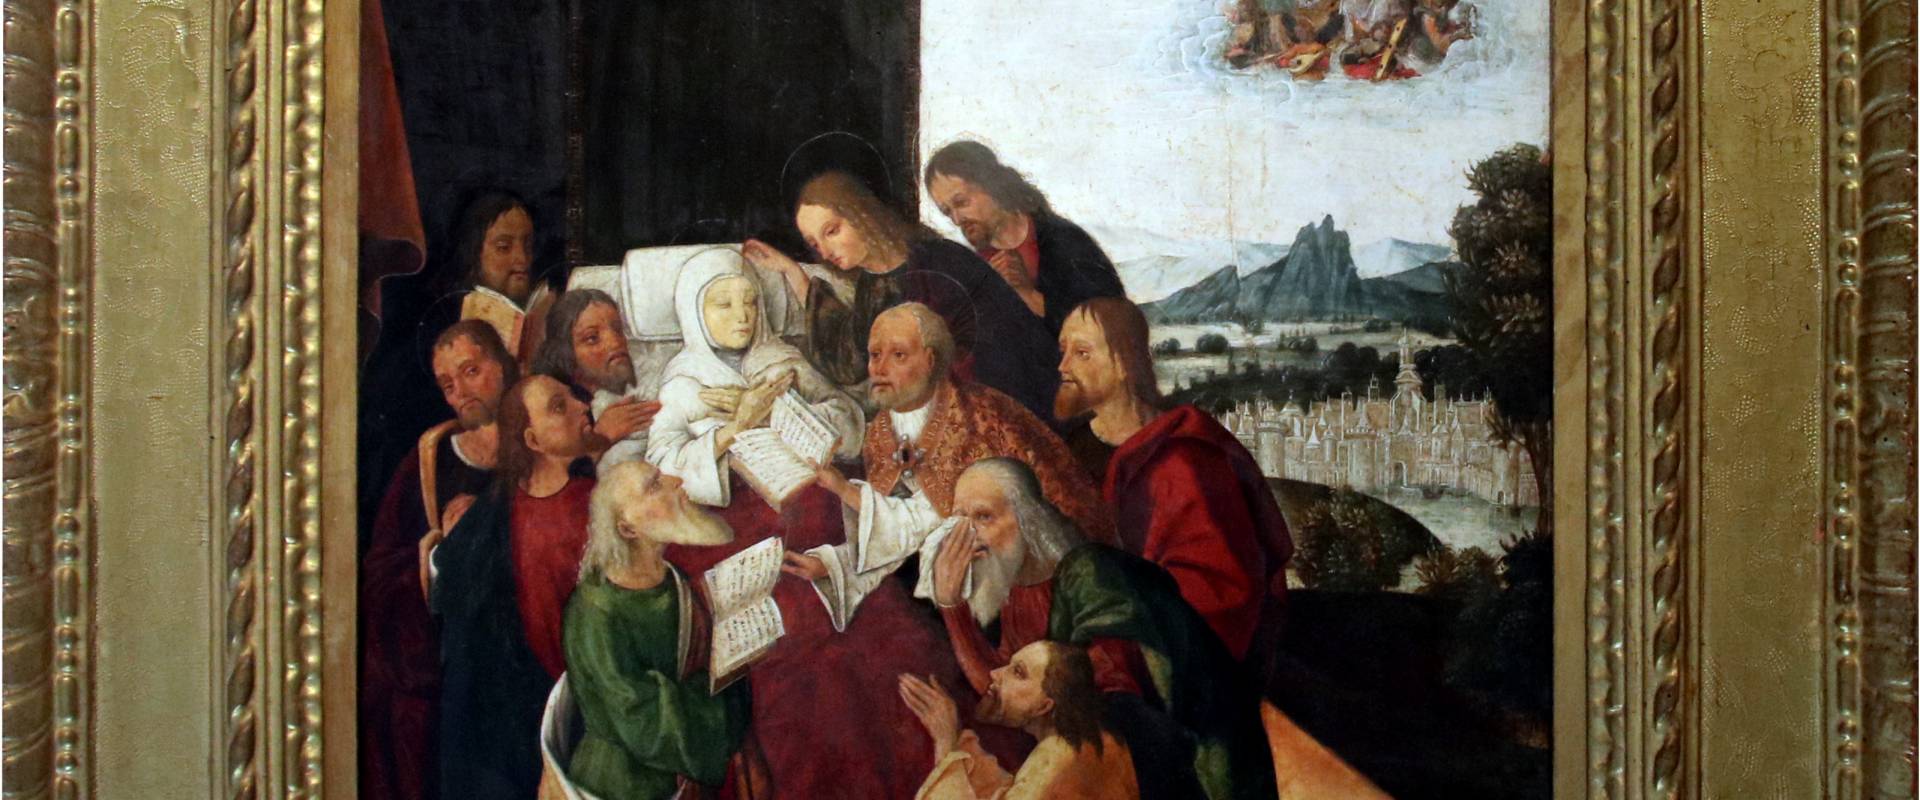 Michele Coltellini, Morte della Madonna, 1502 photo by Mongolo1984